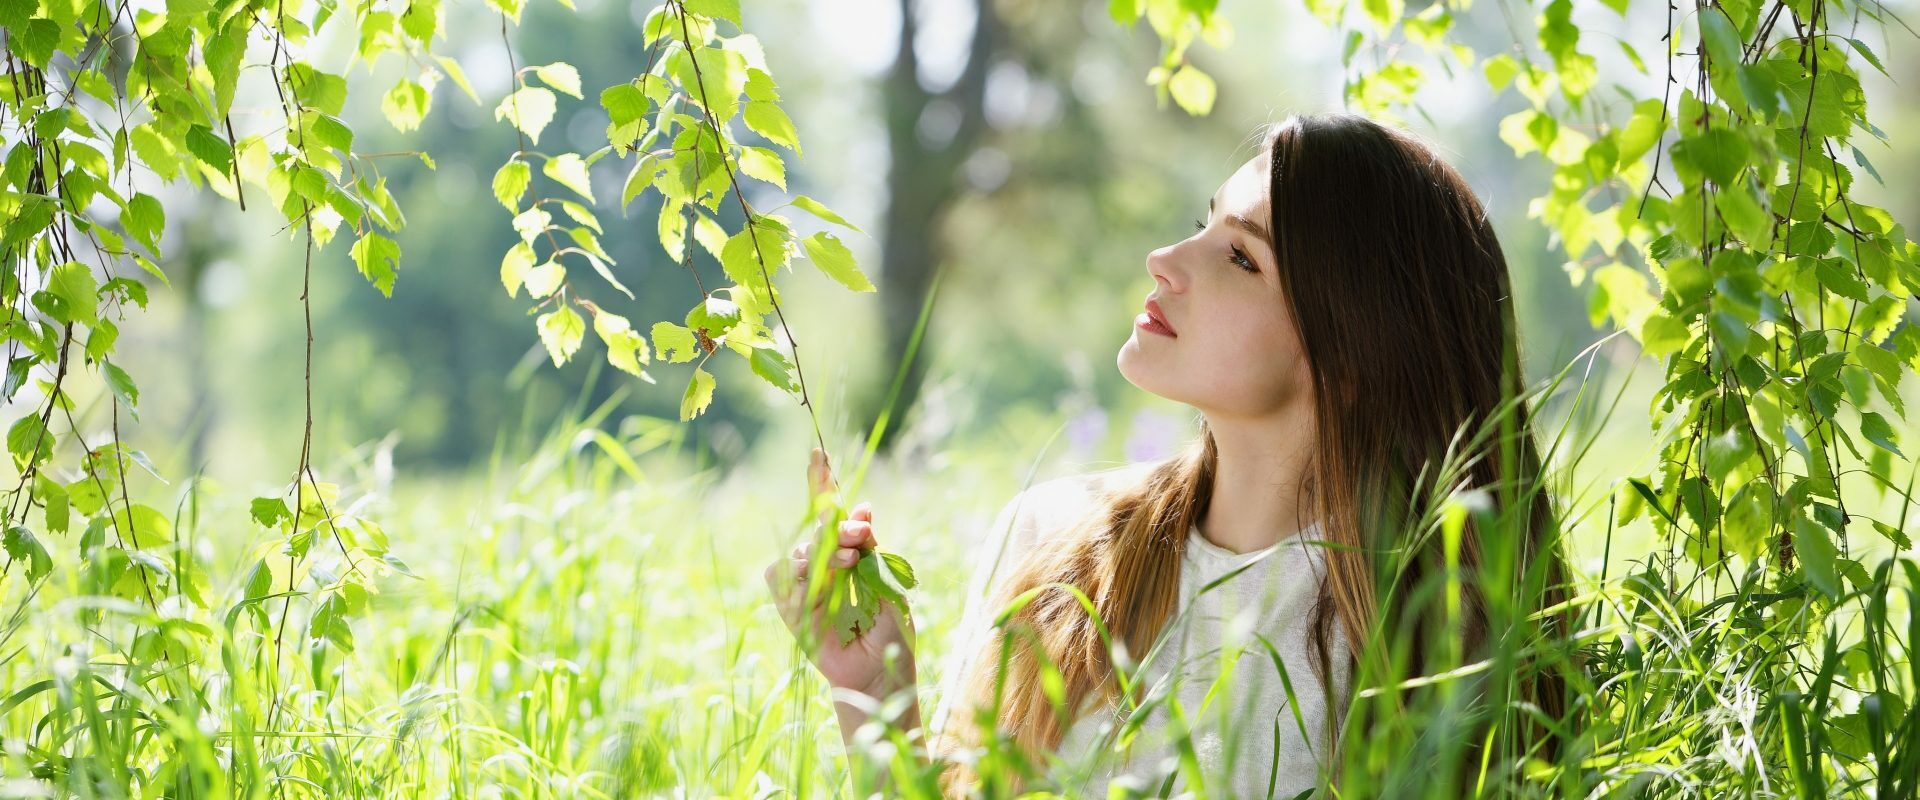 Zjedz sobie las, czyli które drzewa są jadalne? Kobieta przygląda się liściom brzozy.